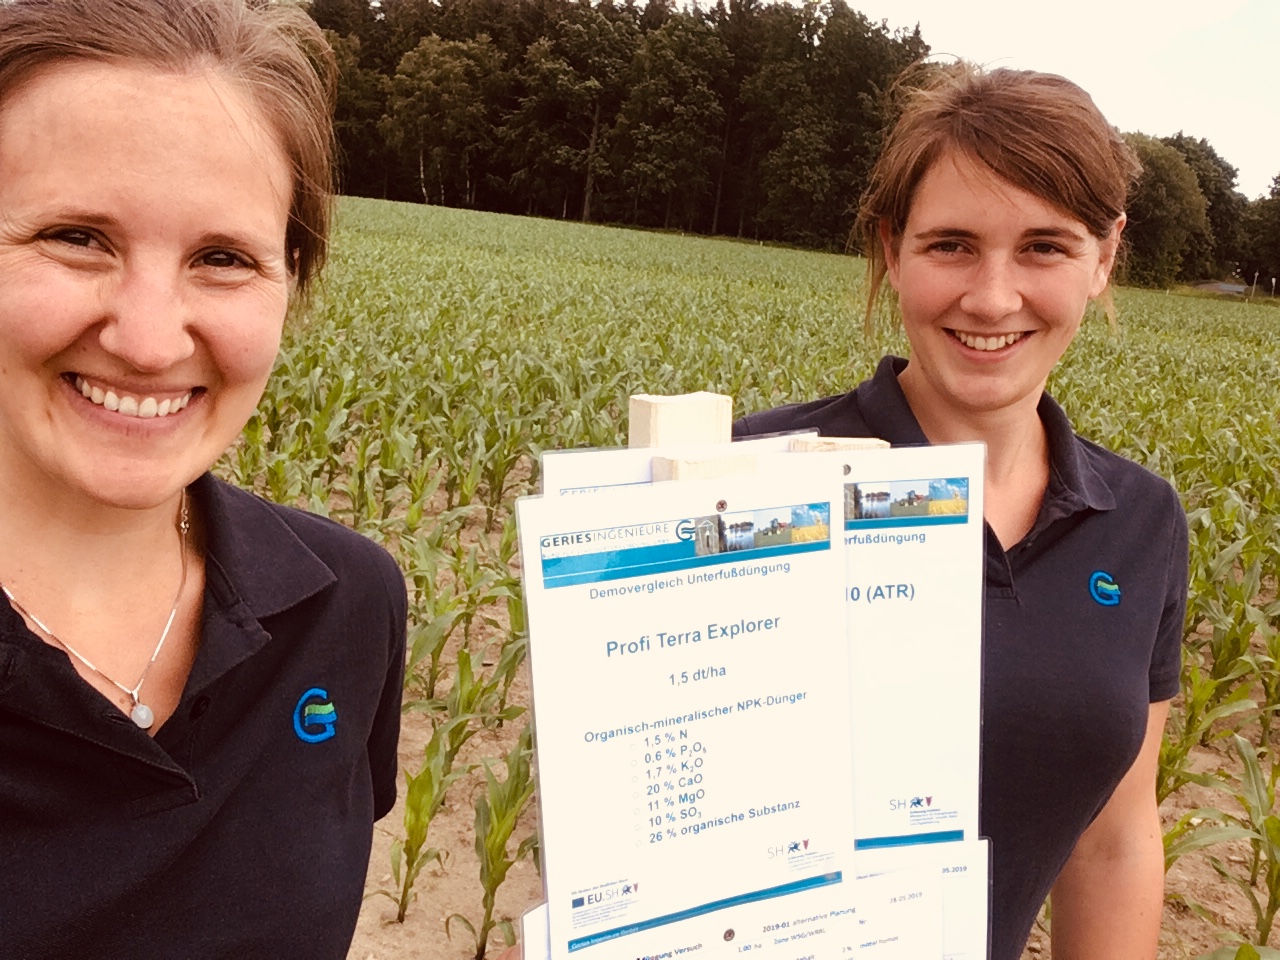 Beraterinnen der Geries GmbH bei der Maisunterfußdüngung 27.06.2019